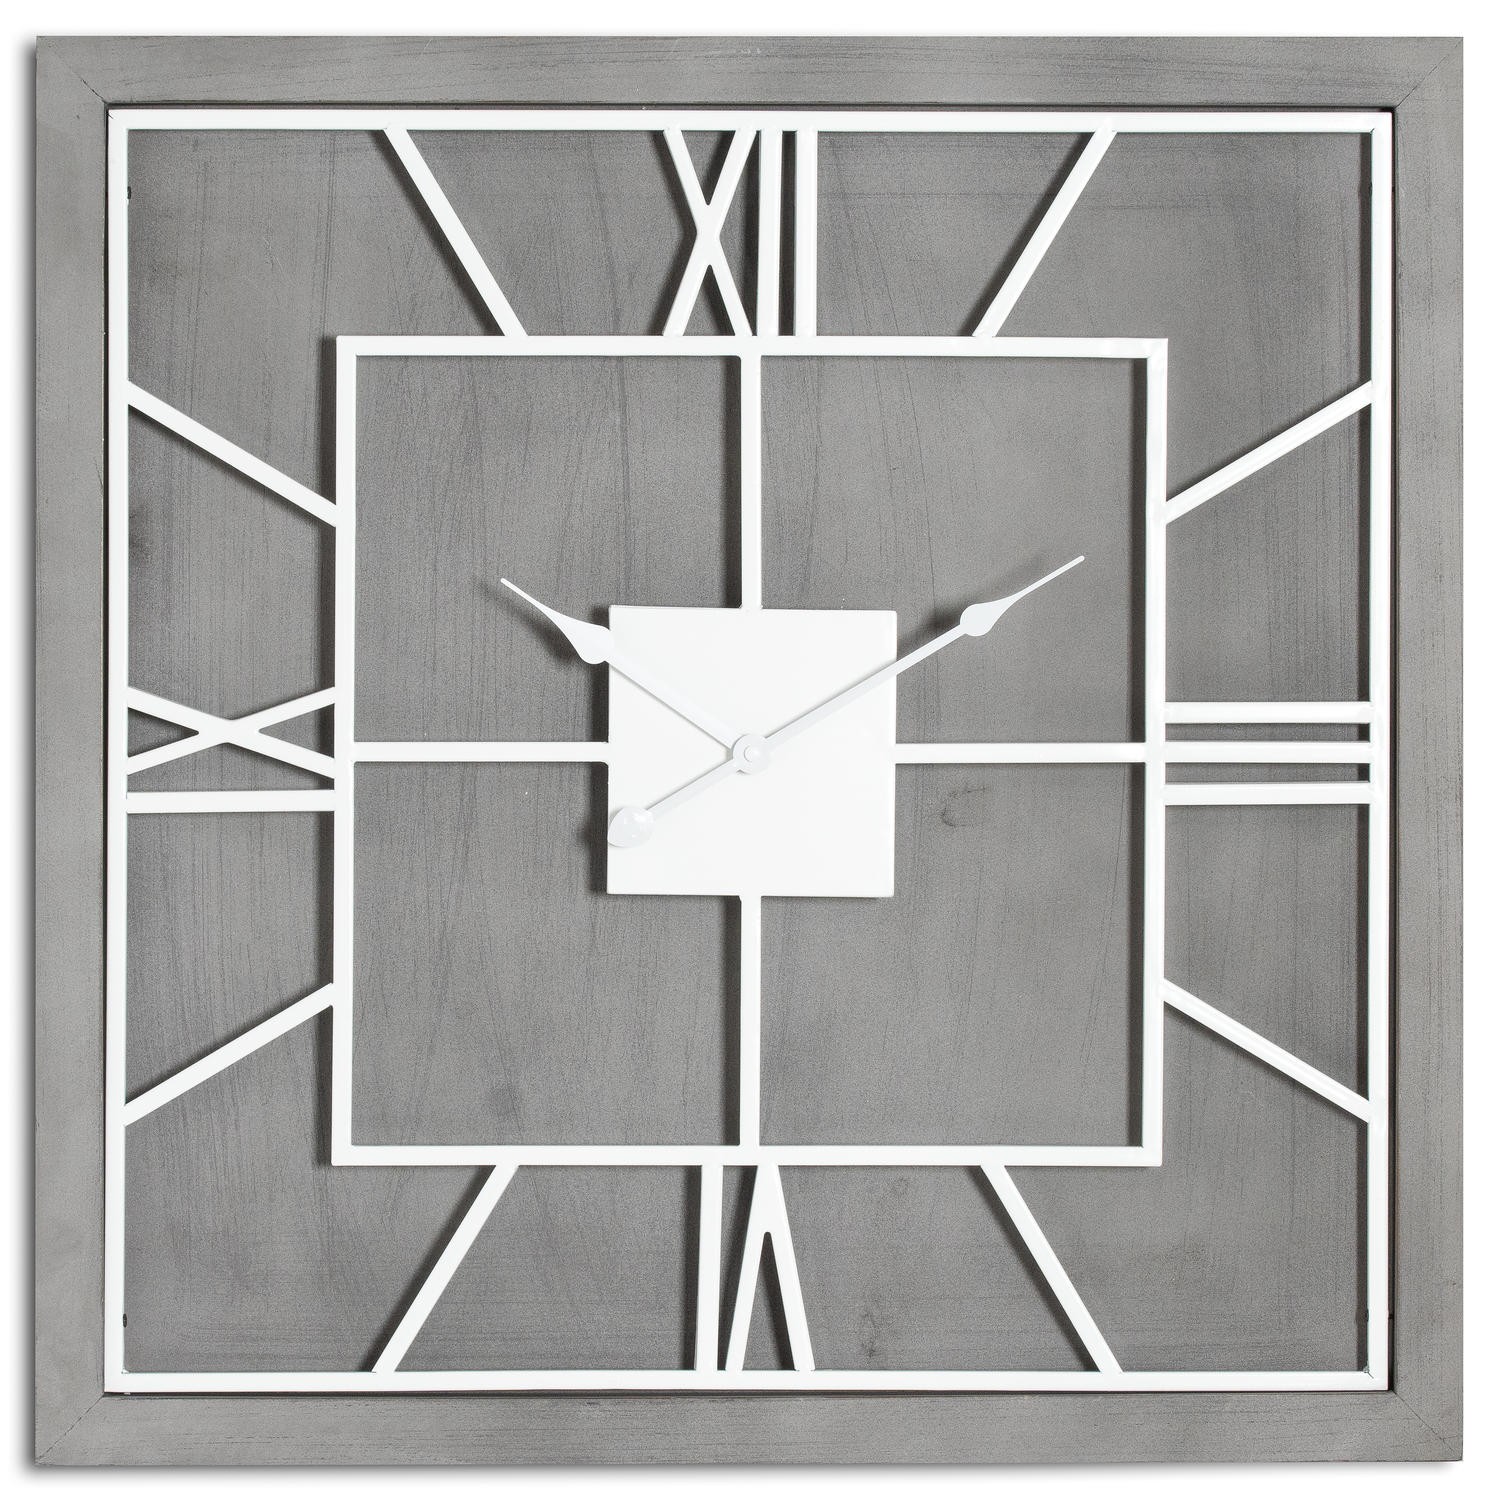 Estila Moderní jedinečné čtvercové nástěnné hodiny Stormhill s římskými číslicemi stříbrné barvy 60cm